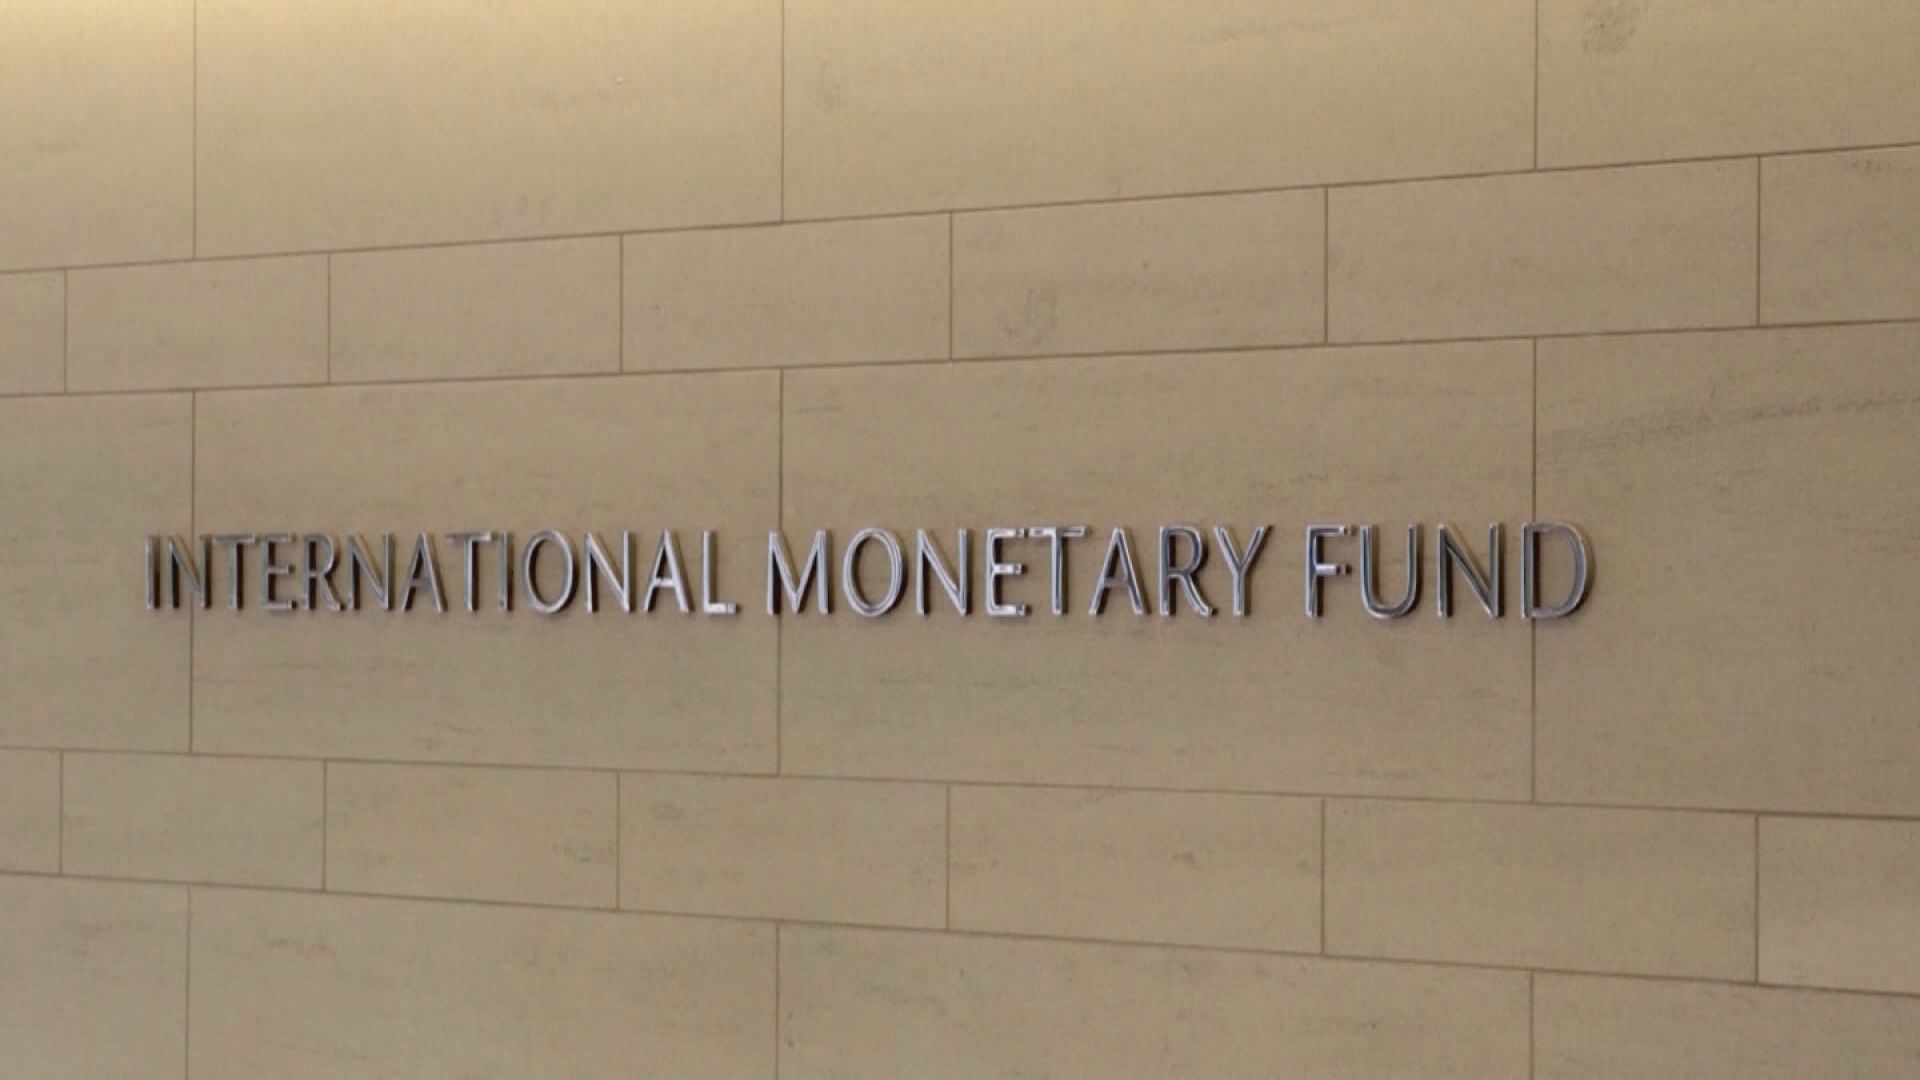 【談判僵局】IMF警告倘美國債務違約對全球經濟影響非常嚴重